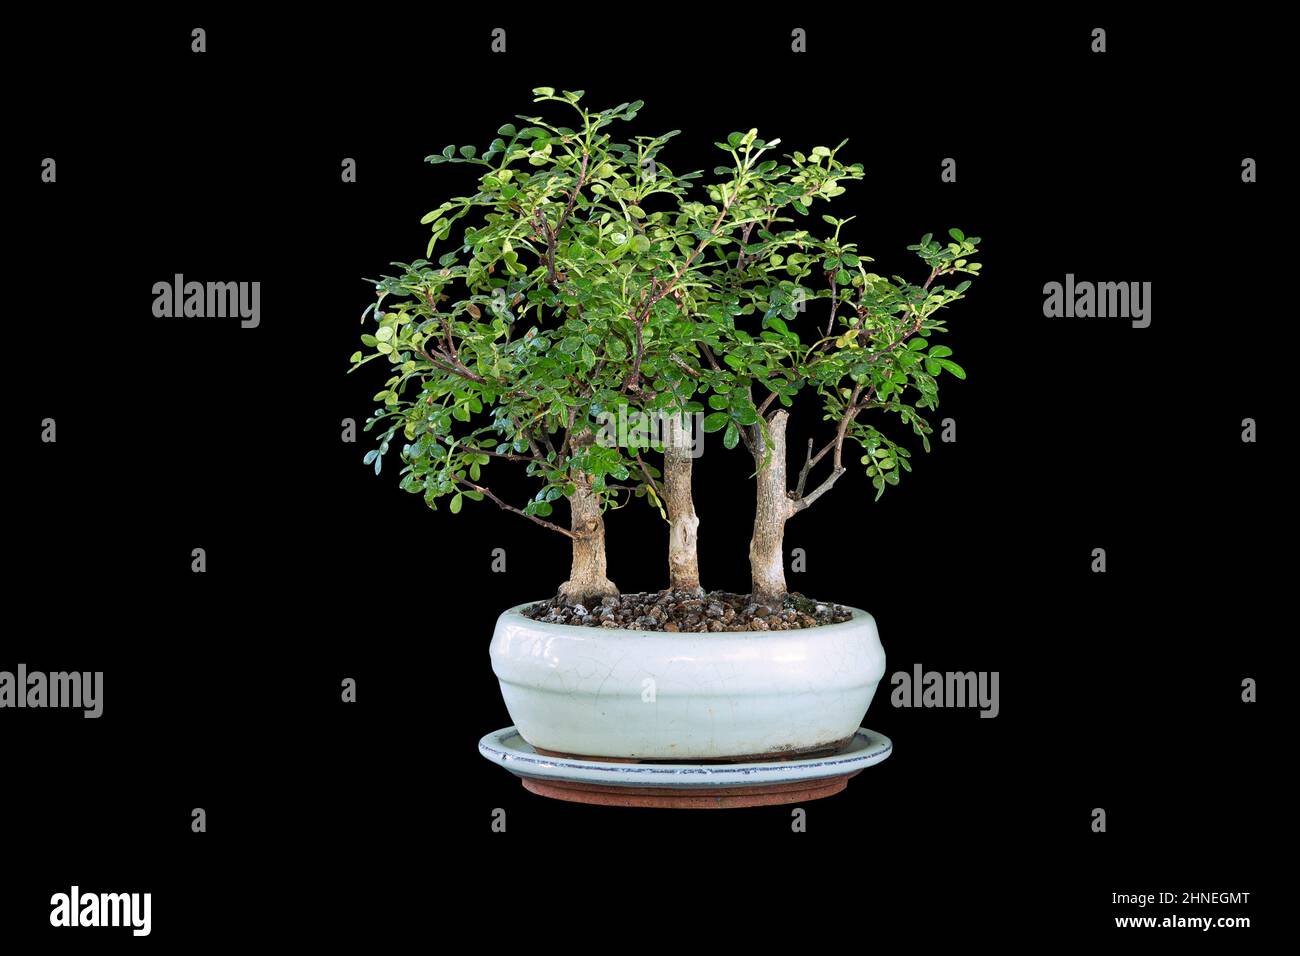 Zanthoxylum piperitum bonsai bosque, el minúsculo árbol chino de pimienta plantado en una olla de cerámica, aislamiento sobre fondo oscuro Foto de stock